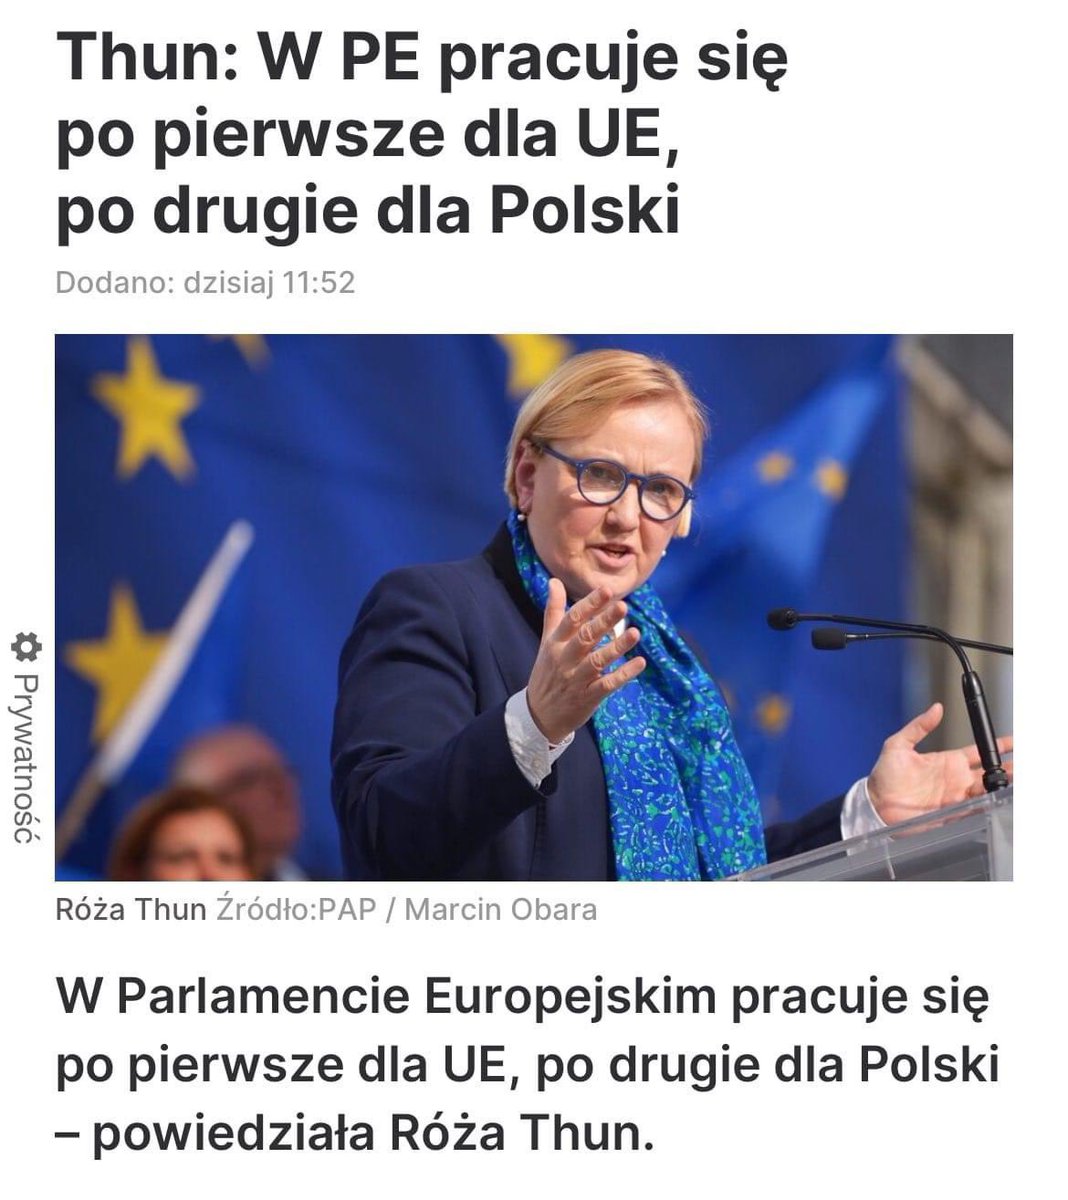 ❌Róża Thun z Trzeciej Drogi pracuje w Parlamencie Europejskim 'po pierwsze dla UE'. 🇪🇺 ✅Dla @KONFEDERACJA_ liczy się tylko polski interes! 🇵🇱